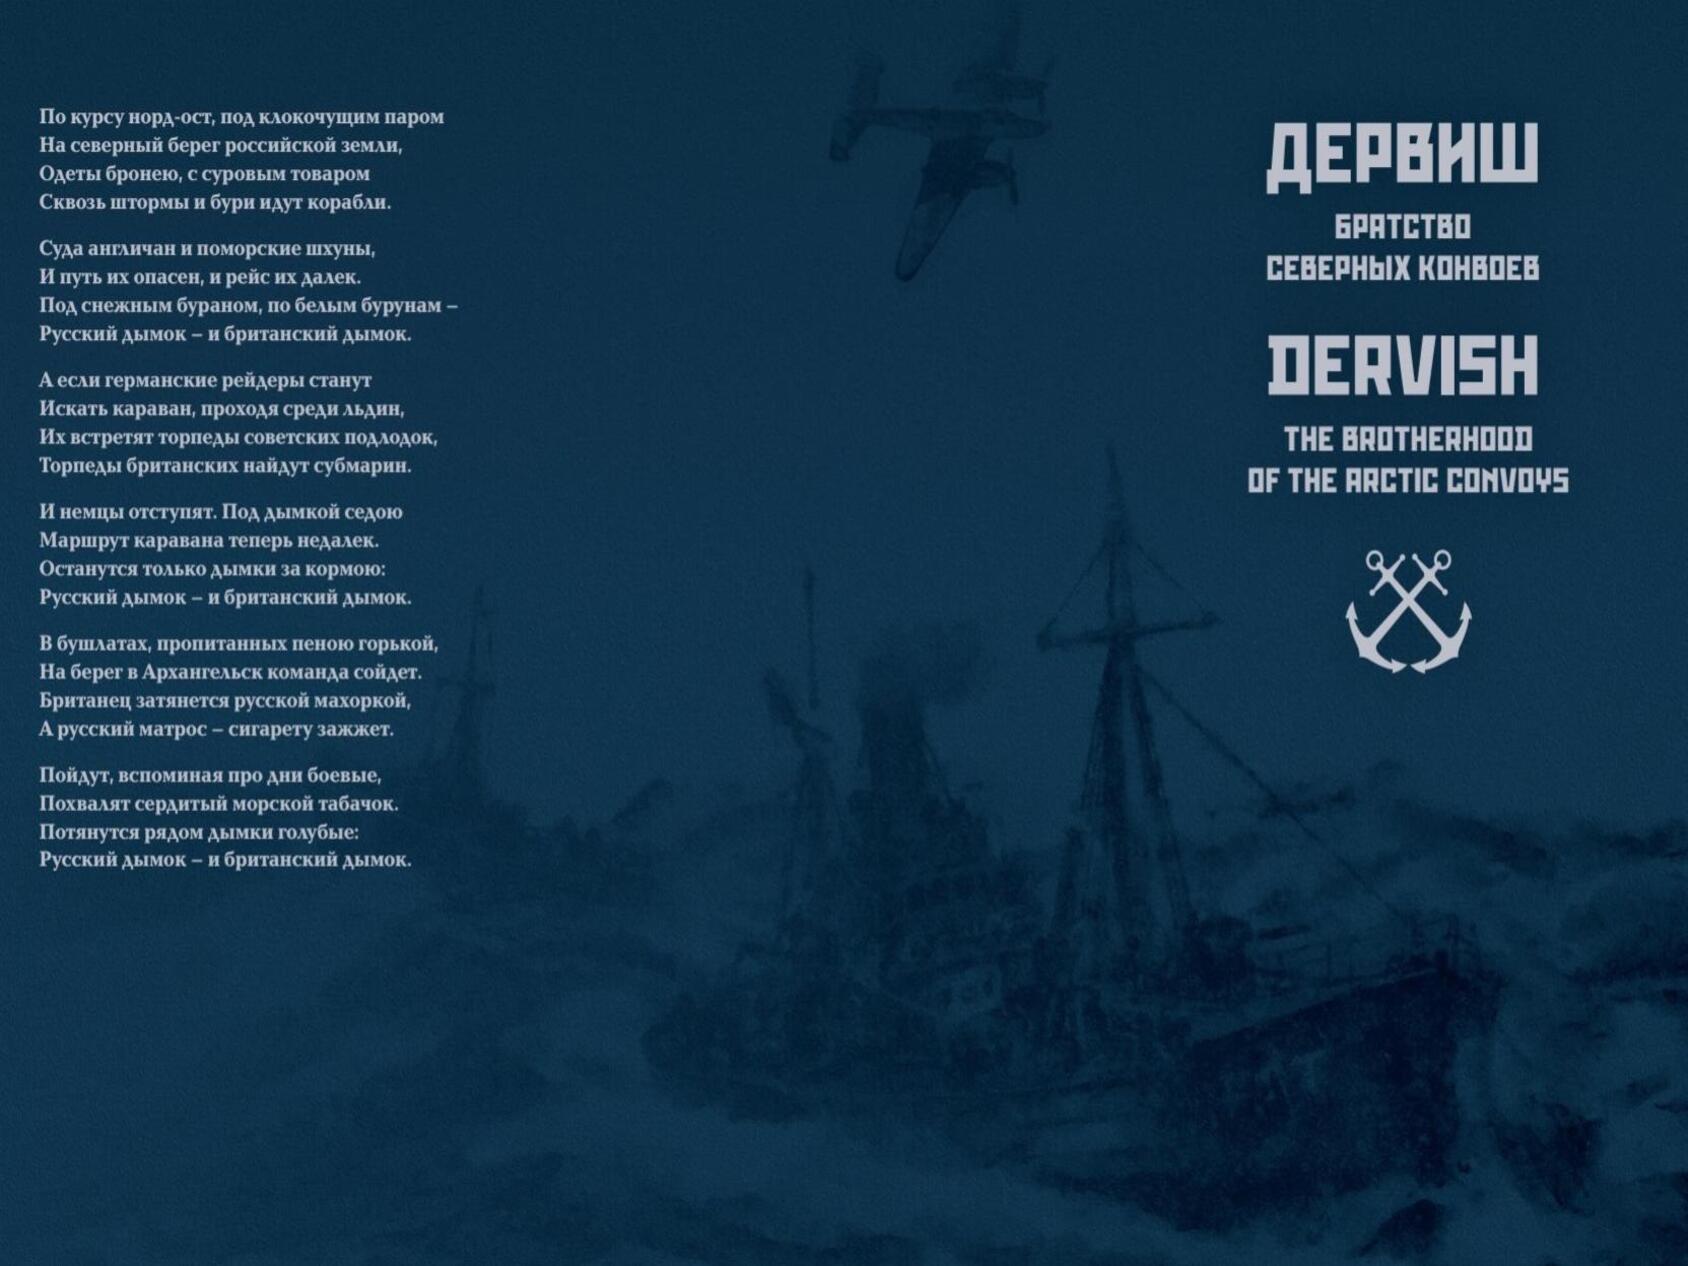 80 лет назад, 31 августа 1941 года в Архангельск прибыл первый арктический конвой «Дервиш»